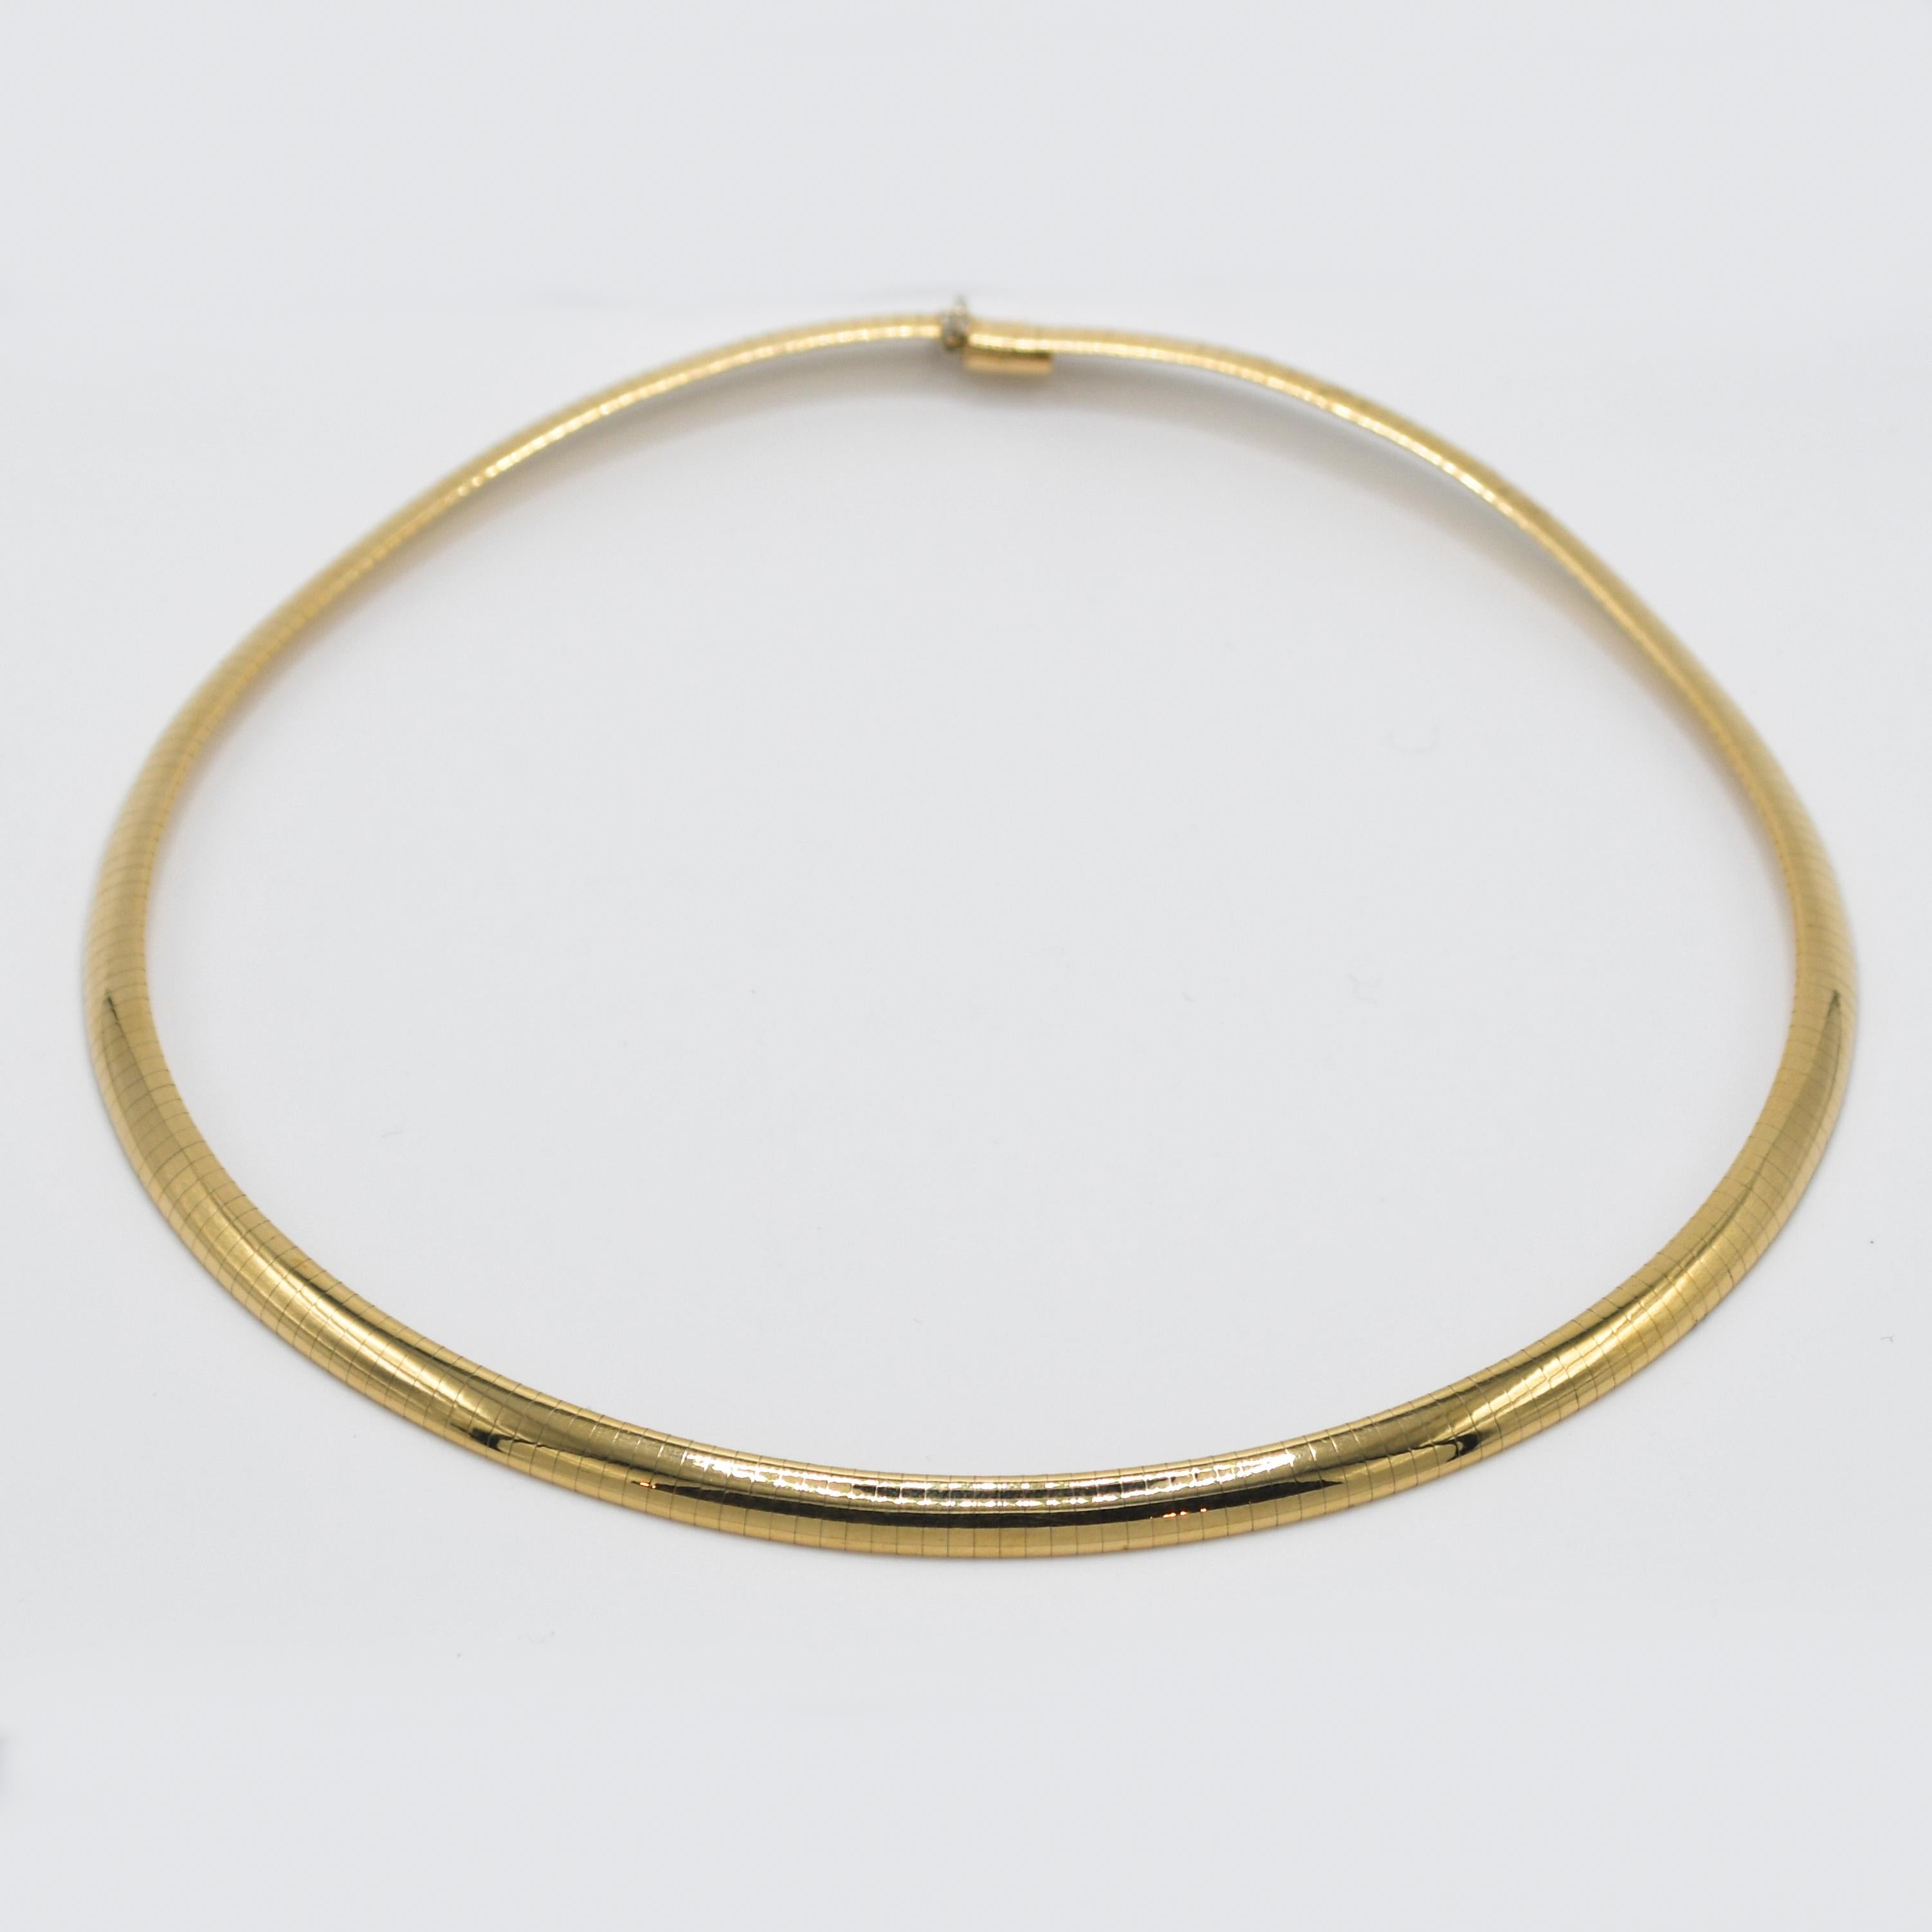 14K Gelbgold Damen Omega Halskette, 27,2g
Omega-Gliederkette aus 14k Gelbgold.
Gestempelt 14k und wiegt 27,2 Gramm.
Die Halskette ist 16 cm lang und 6 mm breit.
Insgesamt sehr guter Zustand.